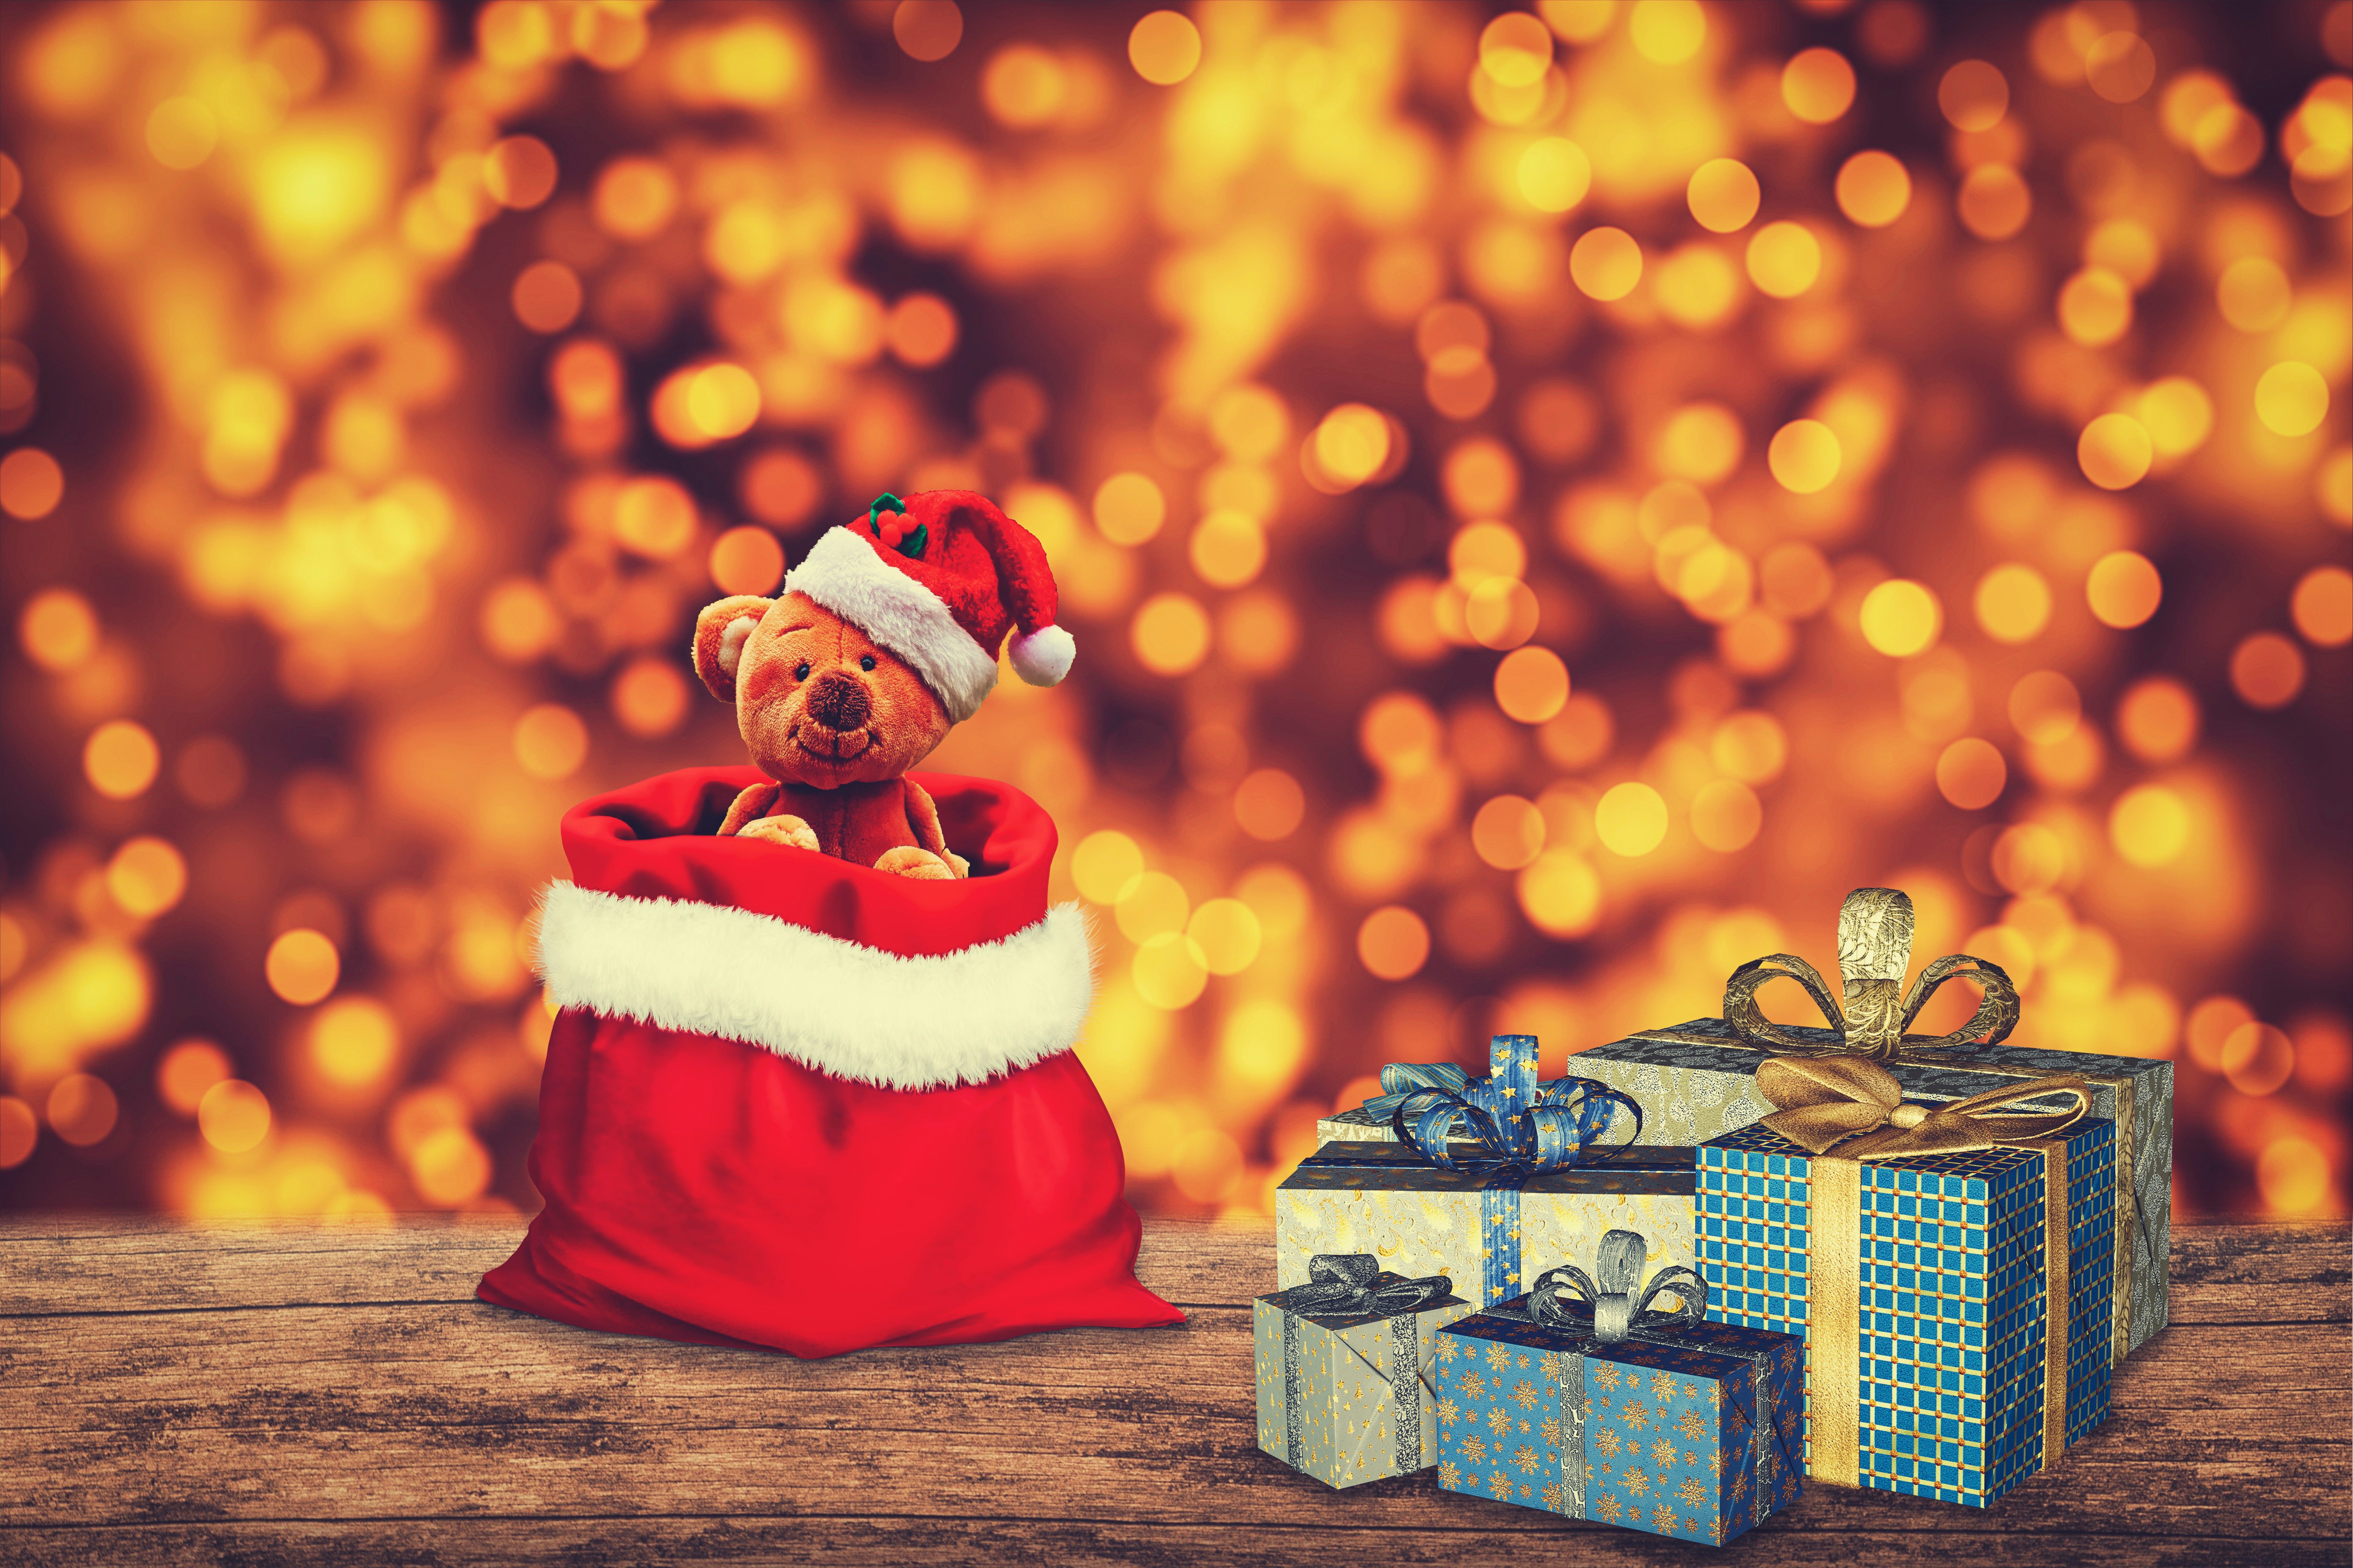 Скачать обои бесплатно Рождество, Боке, Подарки, Плюшевый Мишка, Праздничные картинка на рабочий стол ПК